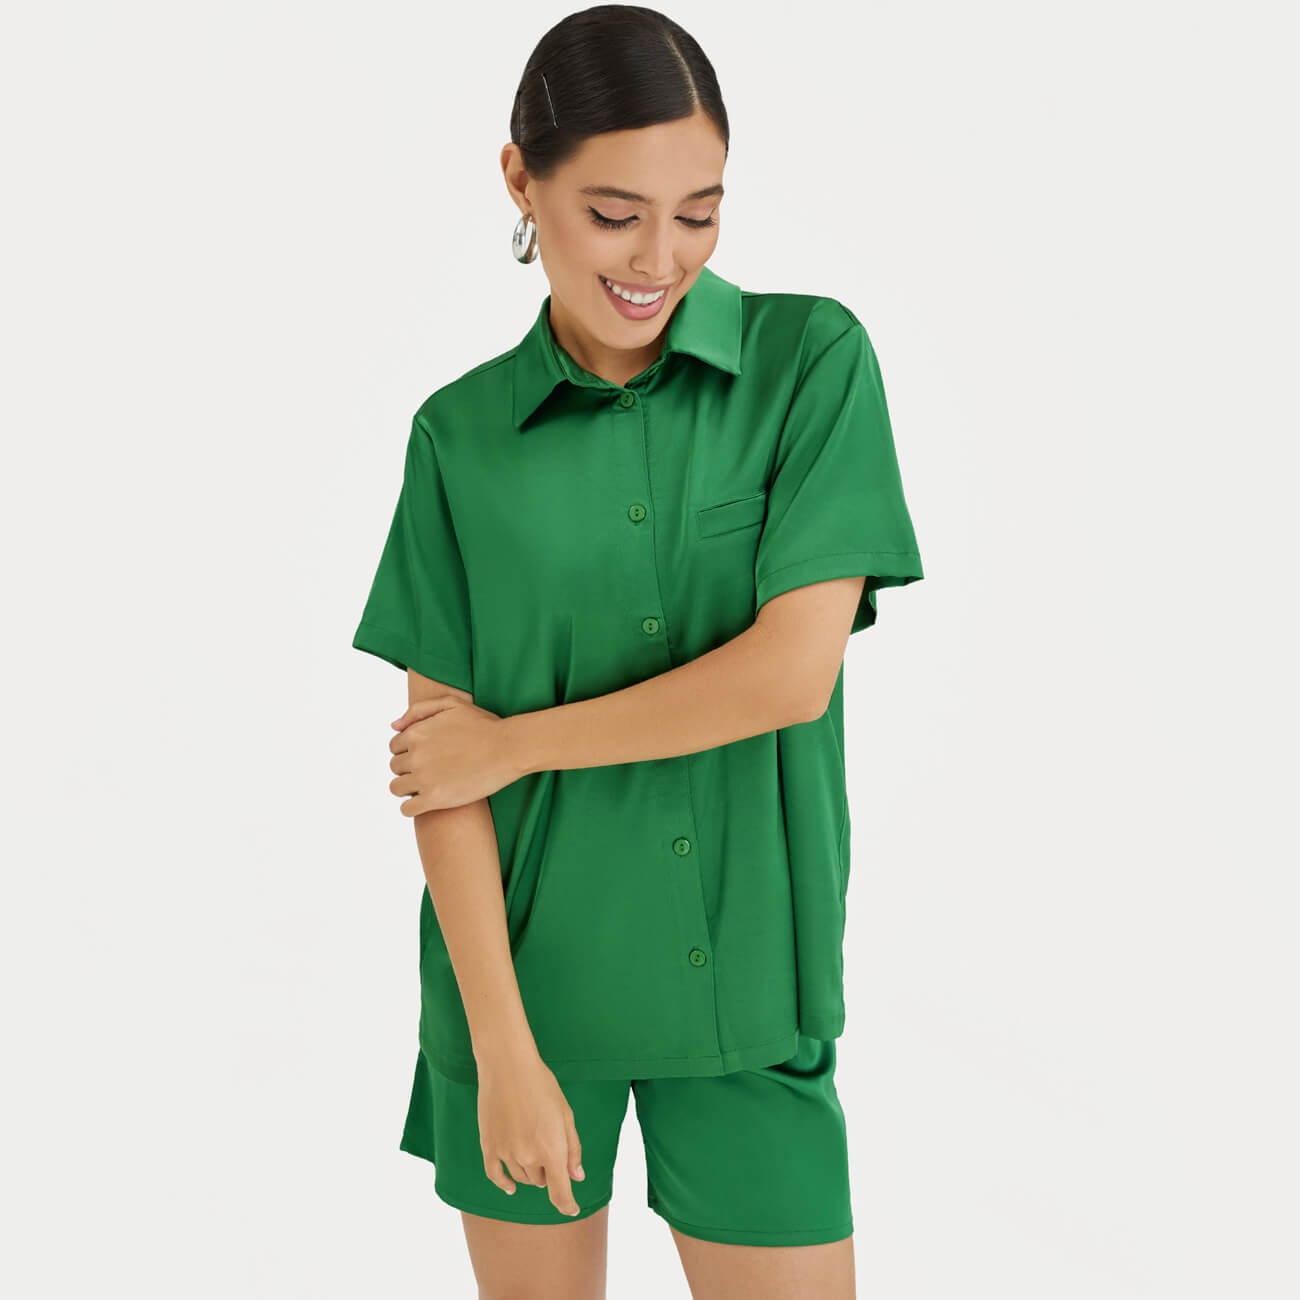 Рубашка женская, р. XL, с коротким рукавом, полиэстер/эластан, зеленая, Madeline uniqlo bt монпоке ut футболка с рисунком и коротким рукавом к